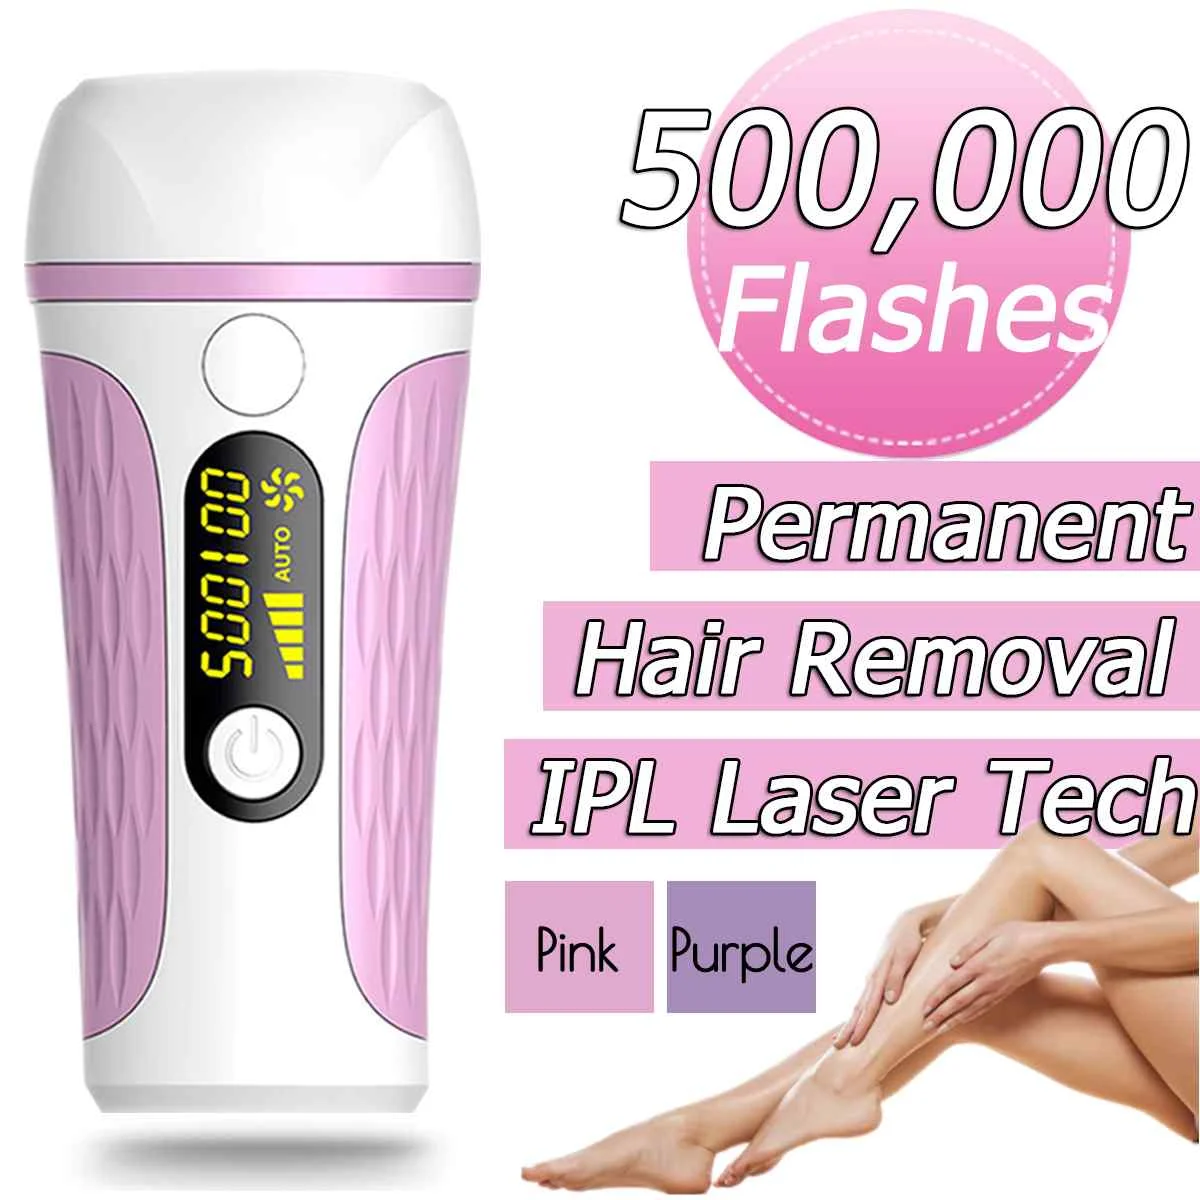 990000/500000 импульсов лазерный депилятор IPL эпилятор перманентное удаление волос Touch Body Leg бикини триммер для женщин массаж тела